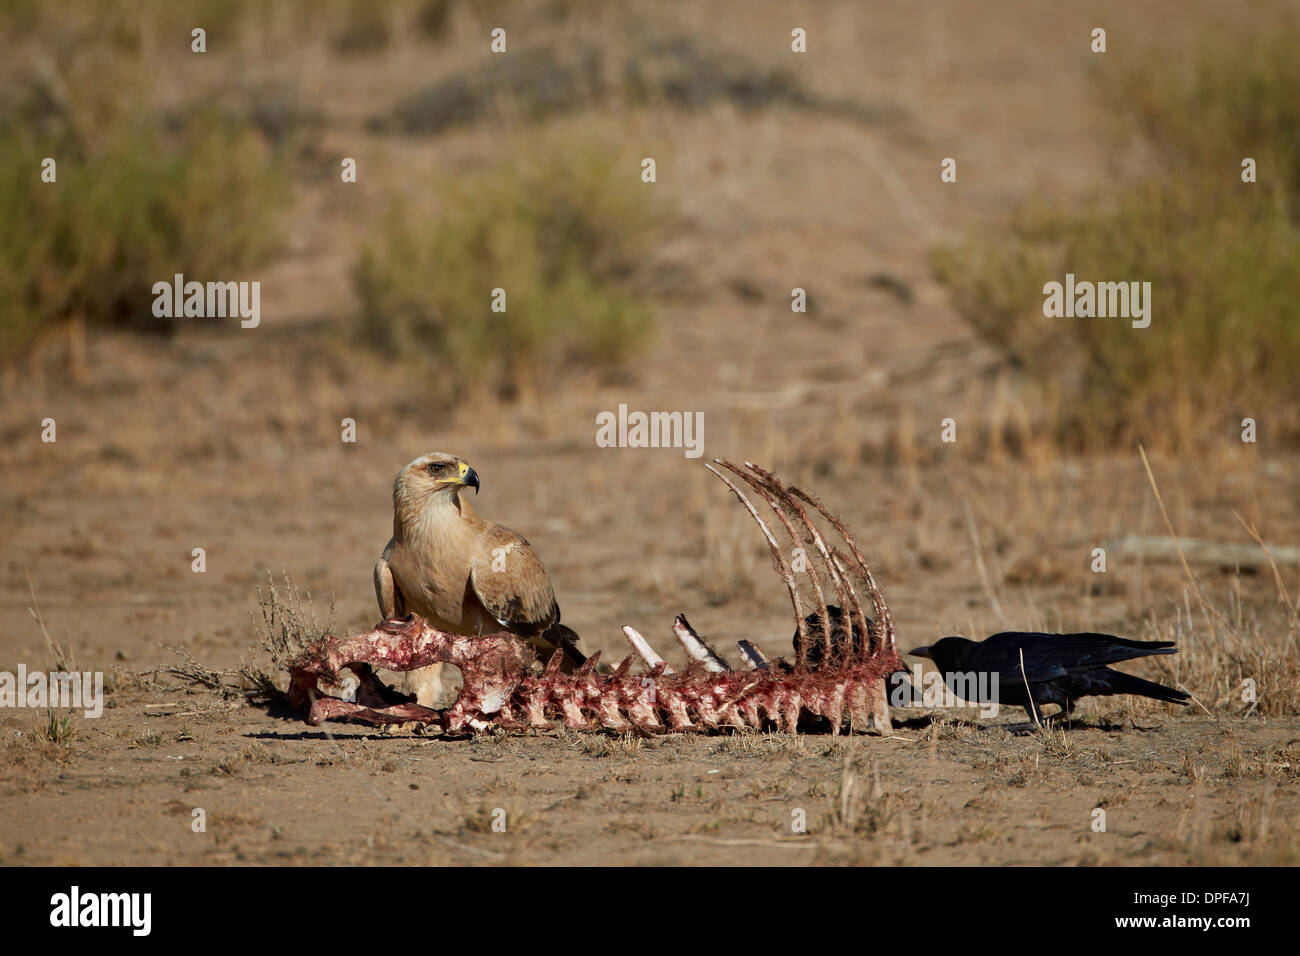 Bruno eagle (Aquila rapax) in corrispondenza di una carcassa, Kgalagadi Parco transfrontaliero, Sud Africa Foto Stock